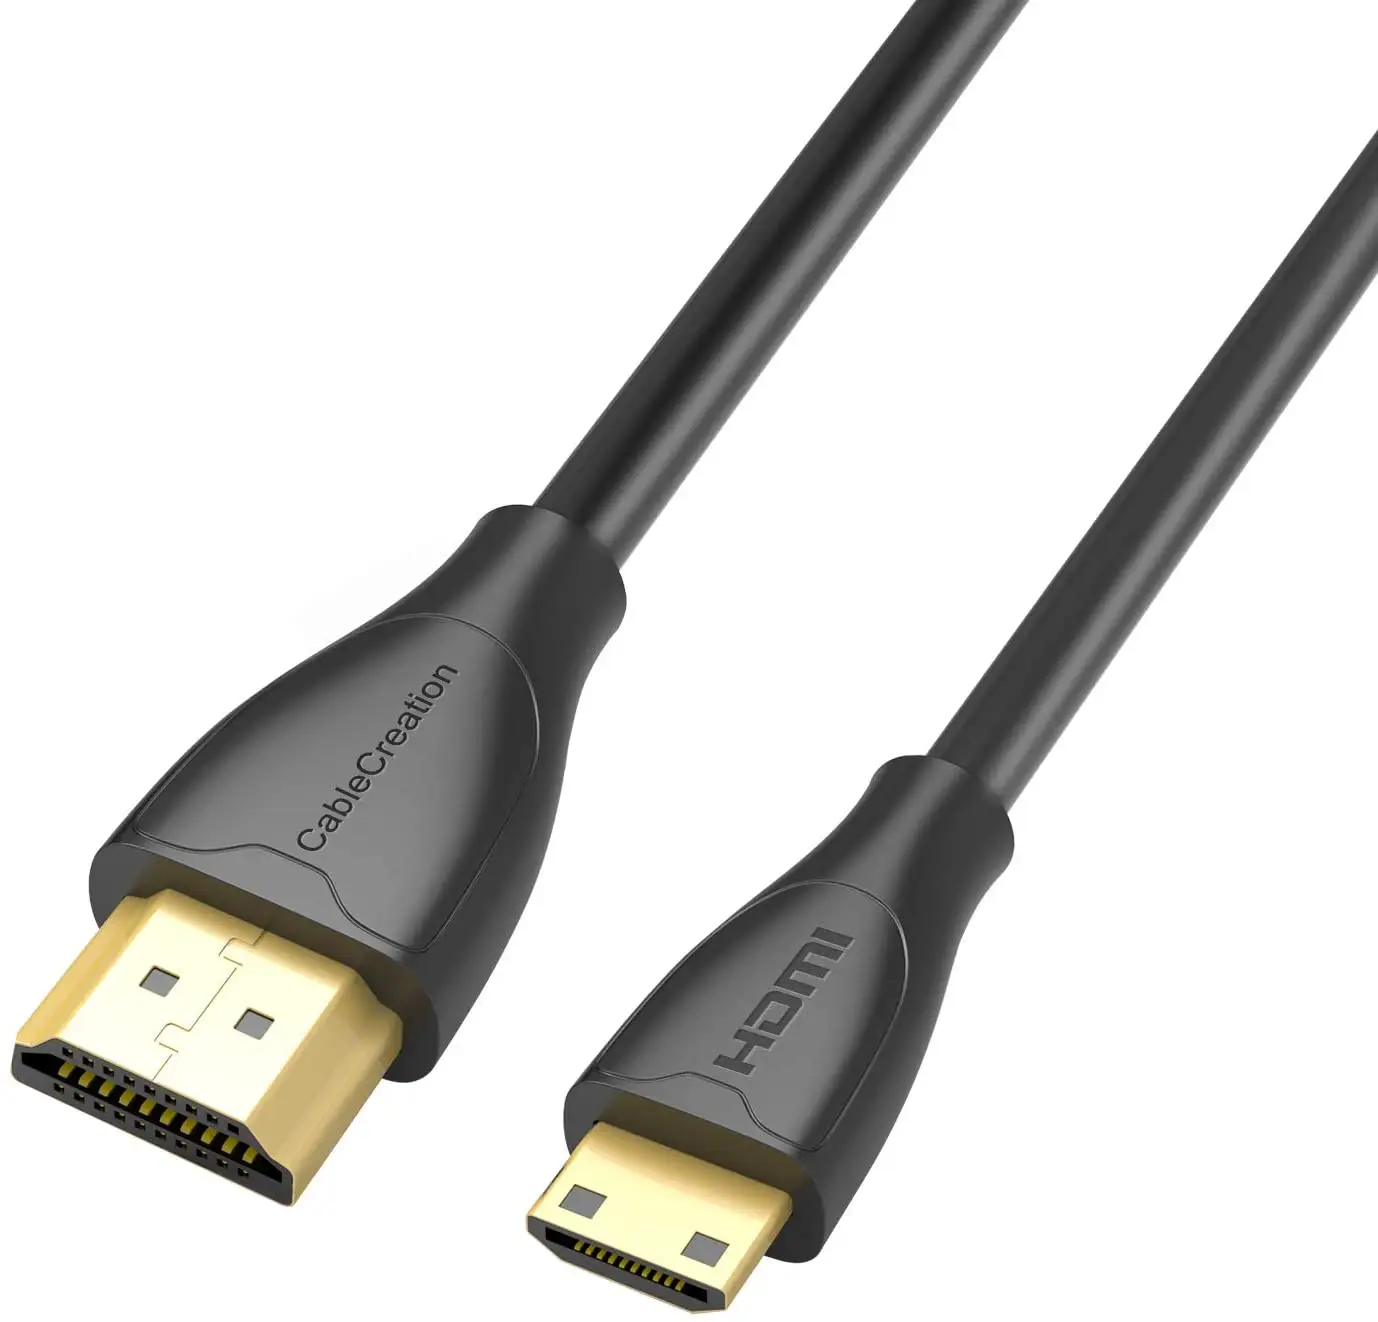 CableCreation ميني HDMI كابل وصلة بينية مُتعددة الوسائط وعالية الوضوح دعم 4K 60Hz الترا HD 3D عالية السرعة